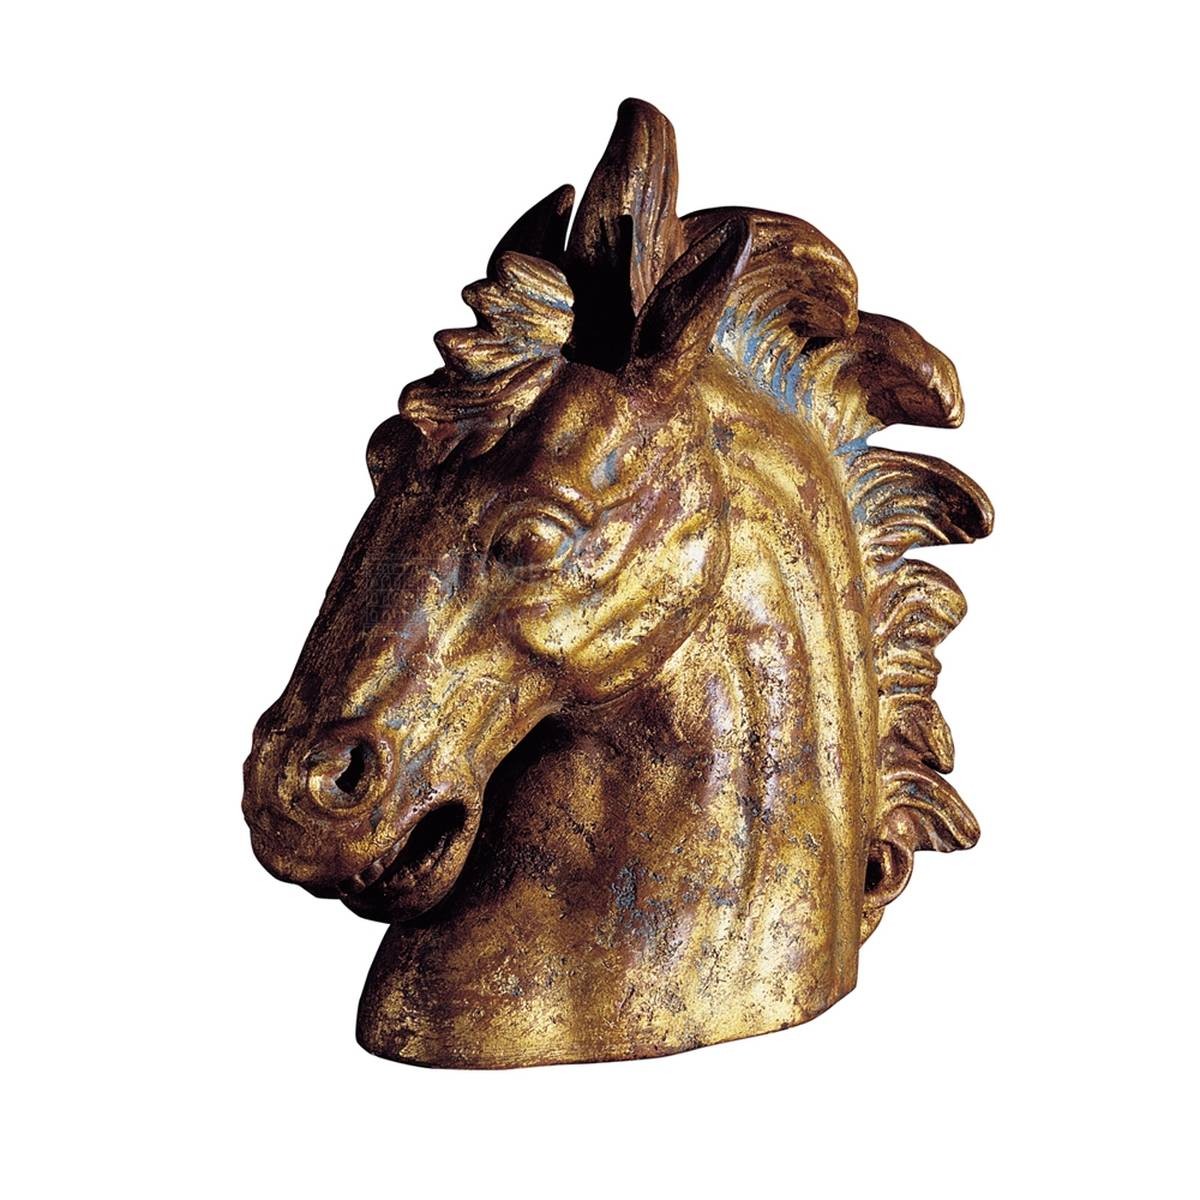 Статуэтка Small horse head из Италии фабрики MARIONI